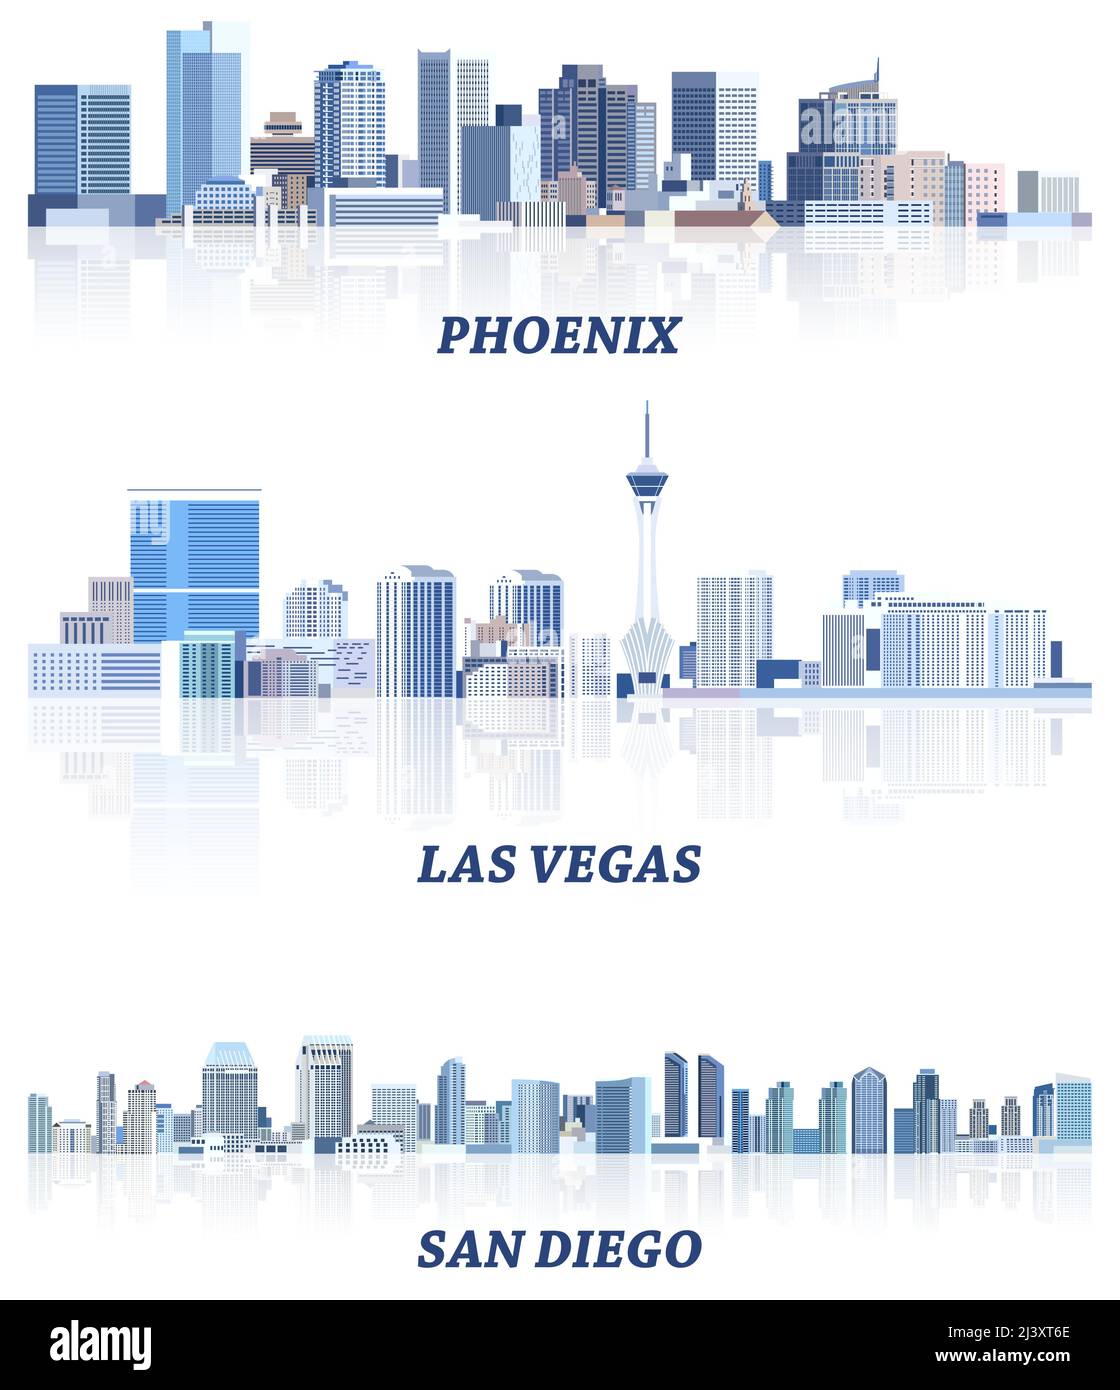 vektor-Sammlung von Stadtansichten der Vereinigten Staaten: Phoenix, Las Vegas, San Diego Skylines in Blautönen Farbpalette. Сrystal Ästhetik Stil Stock Vektor